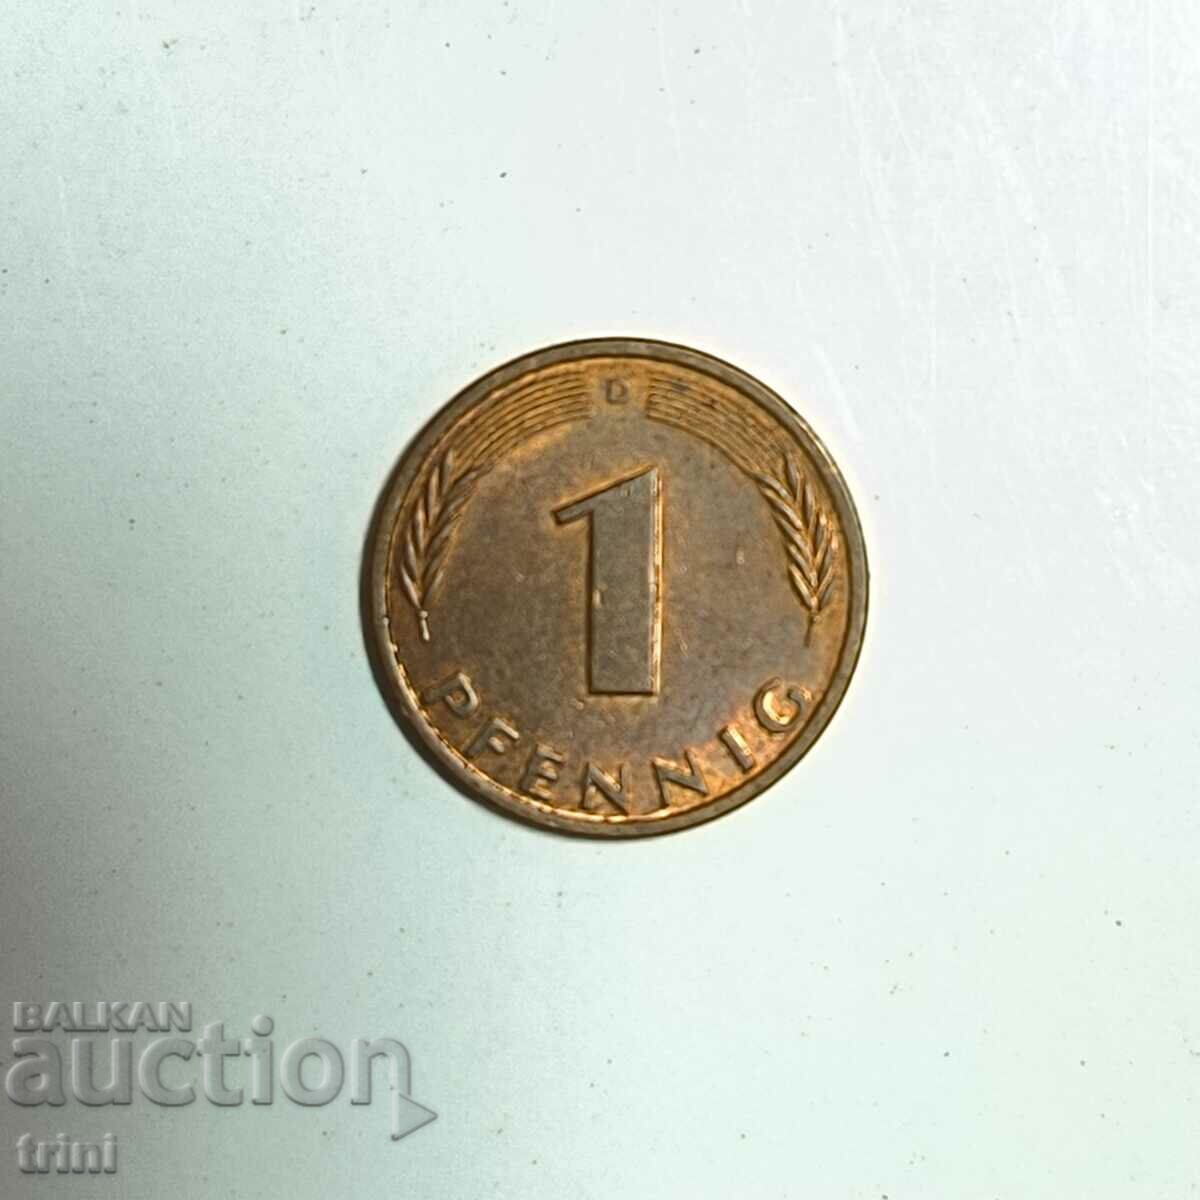 Germany 1 pfennig 1991 year 'D' - Munich e183